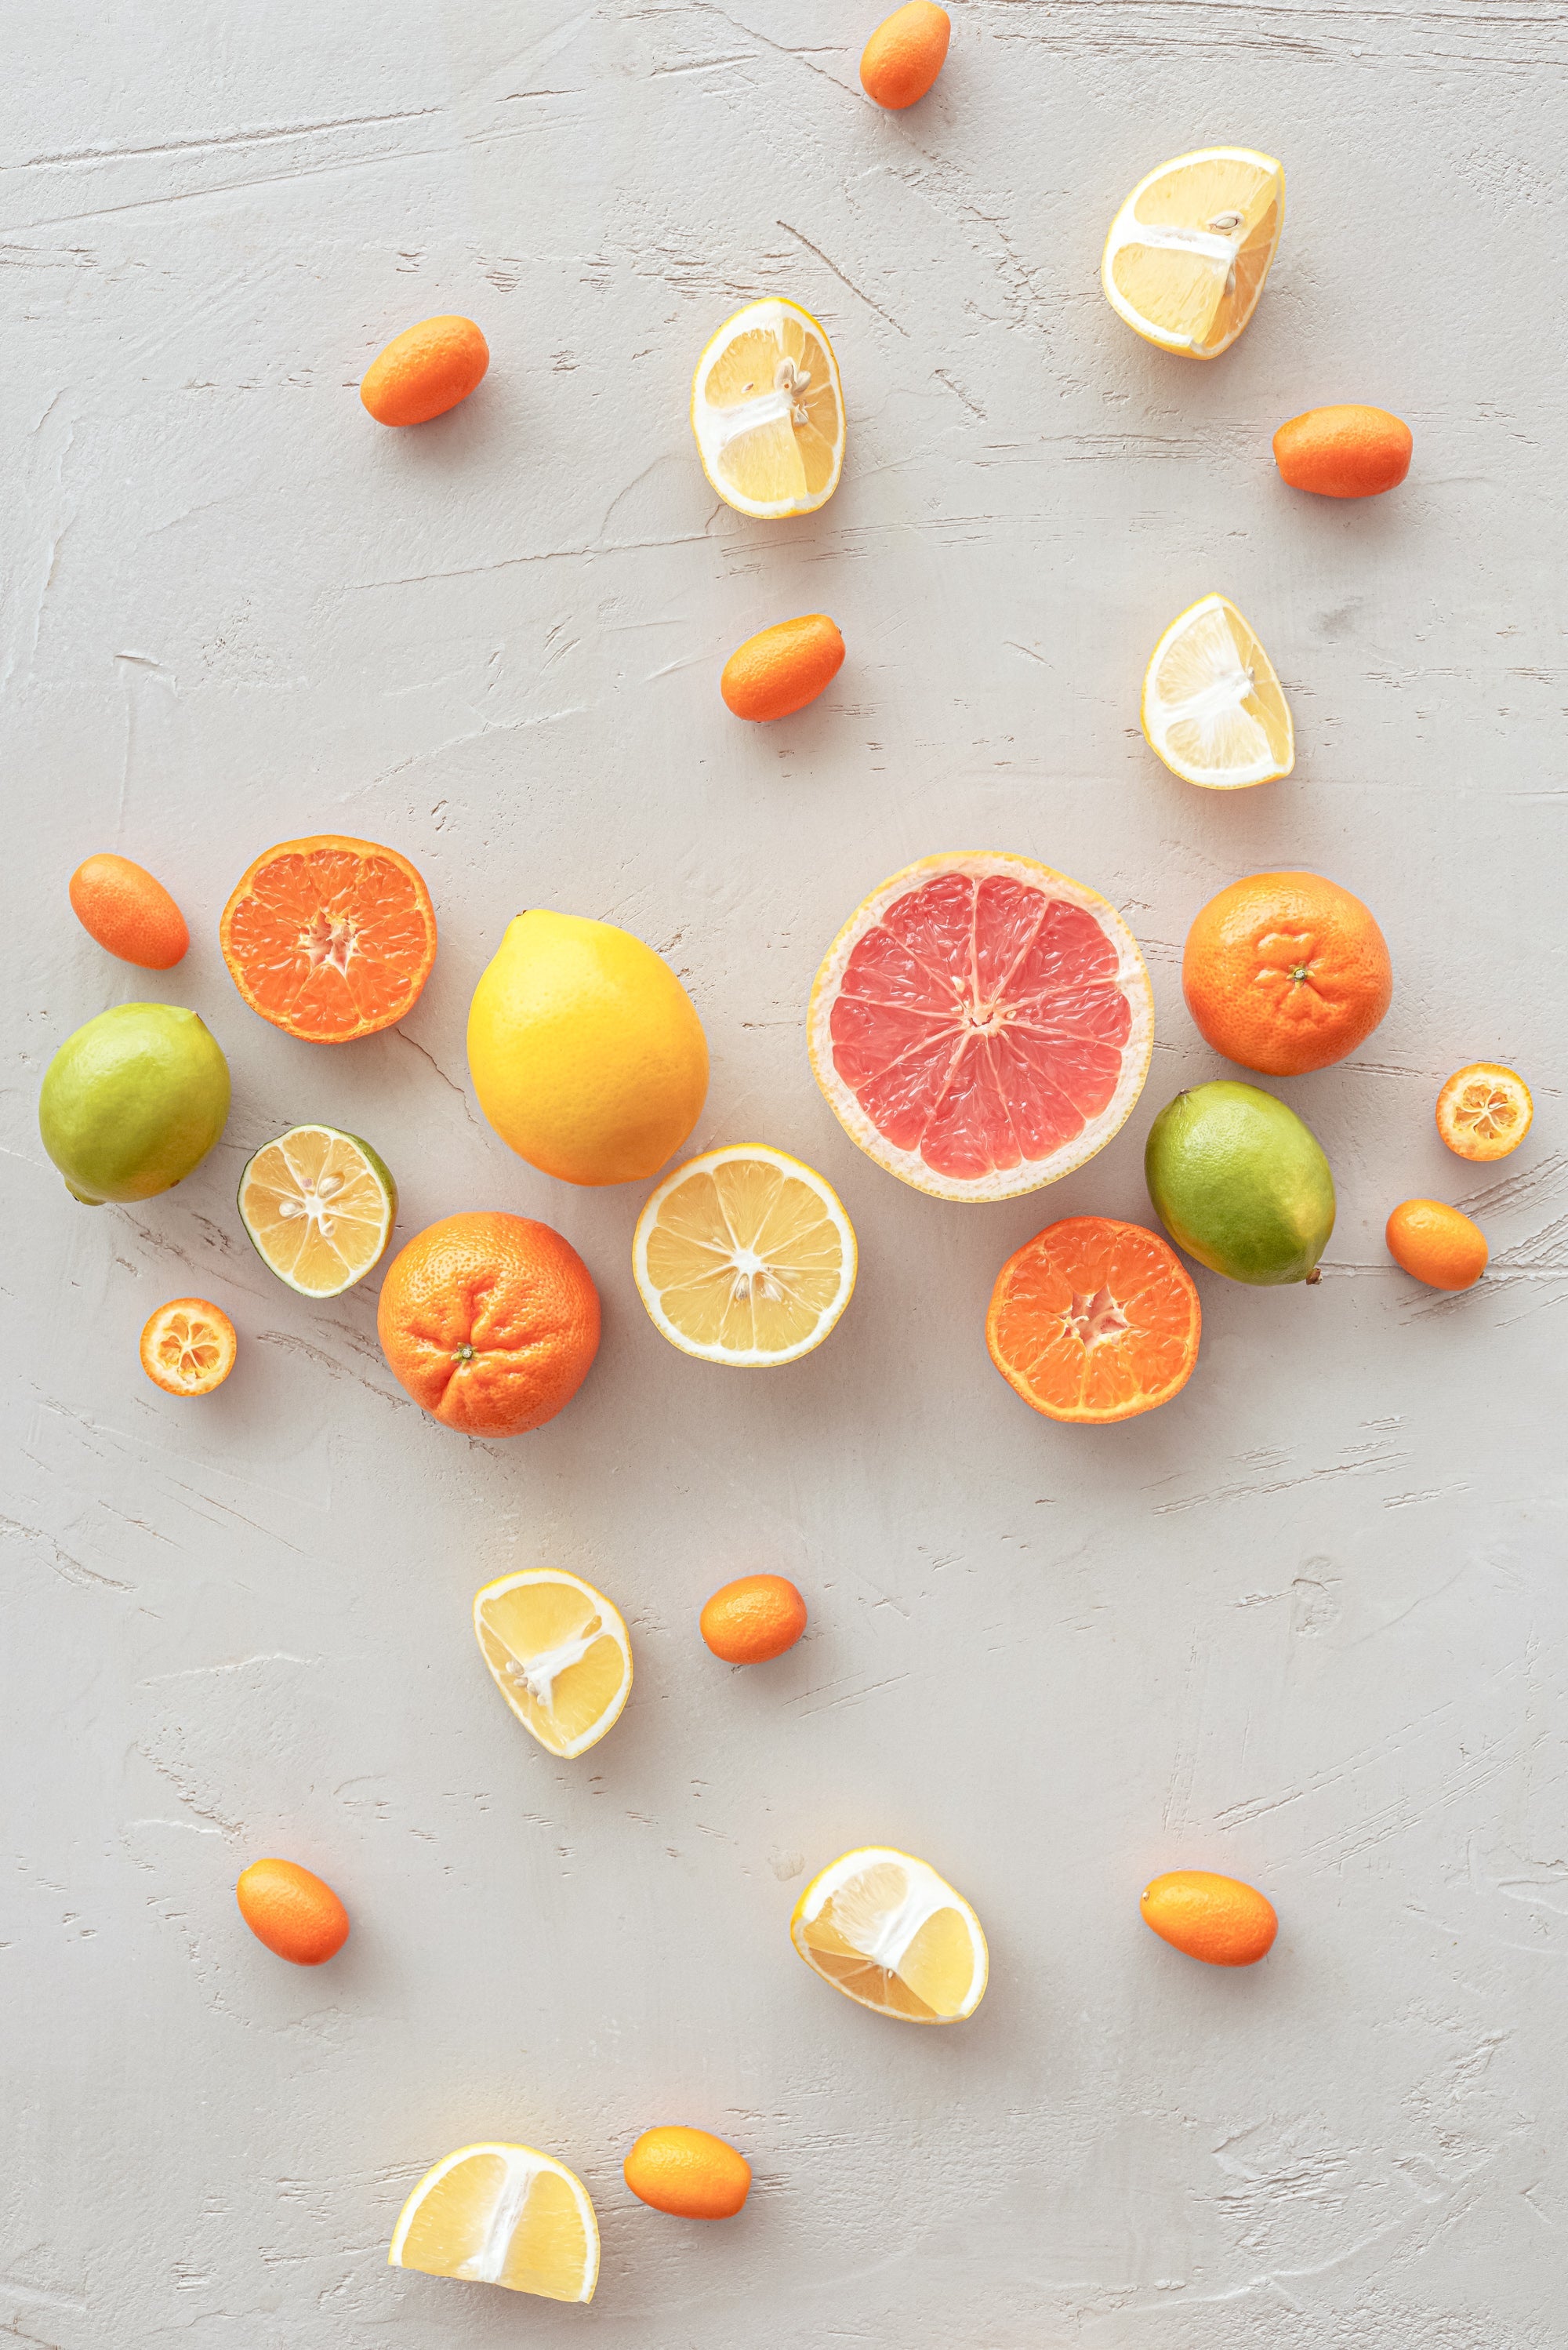 olika citrusfrukter utspridda på ett vackert golv